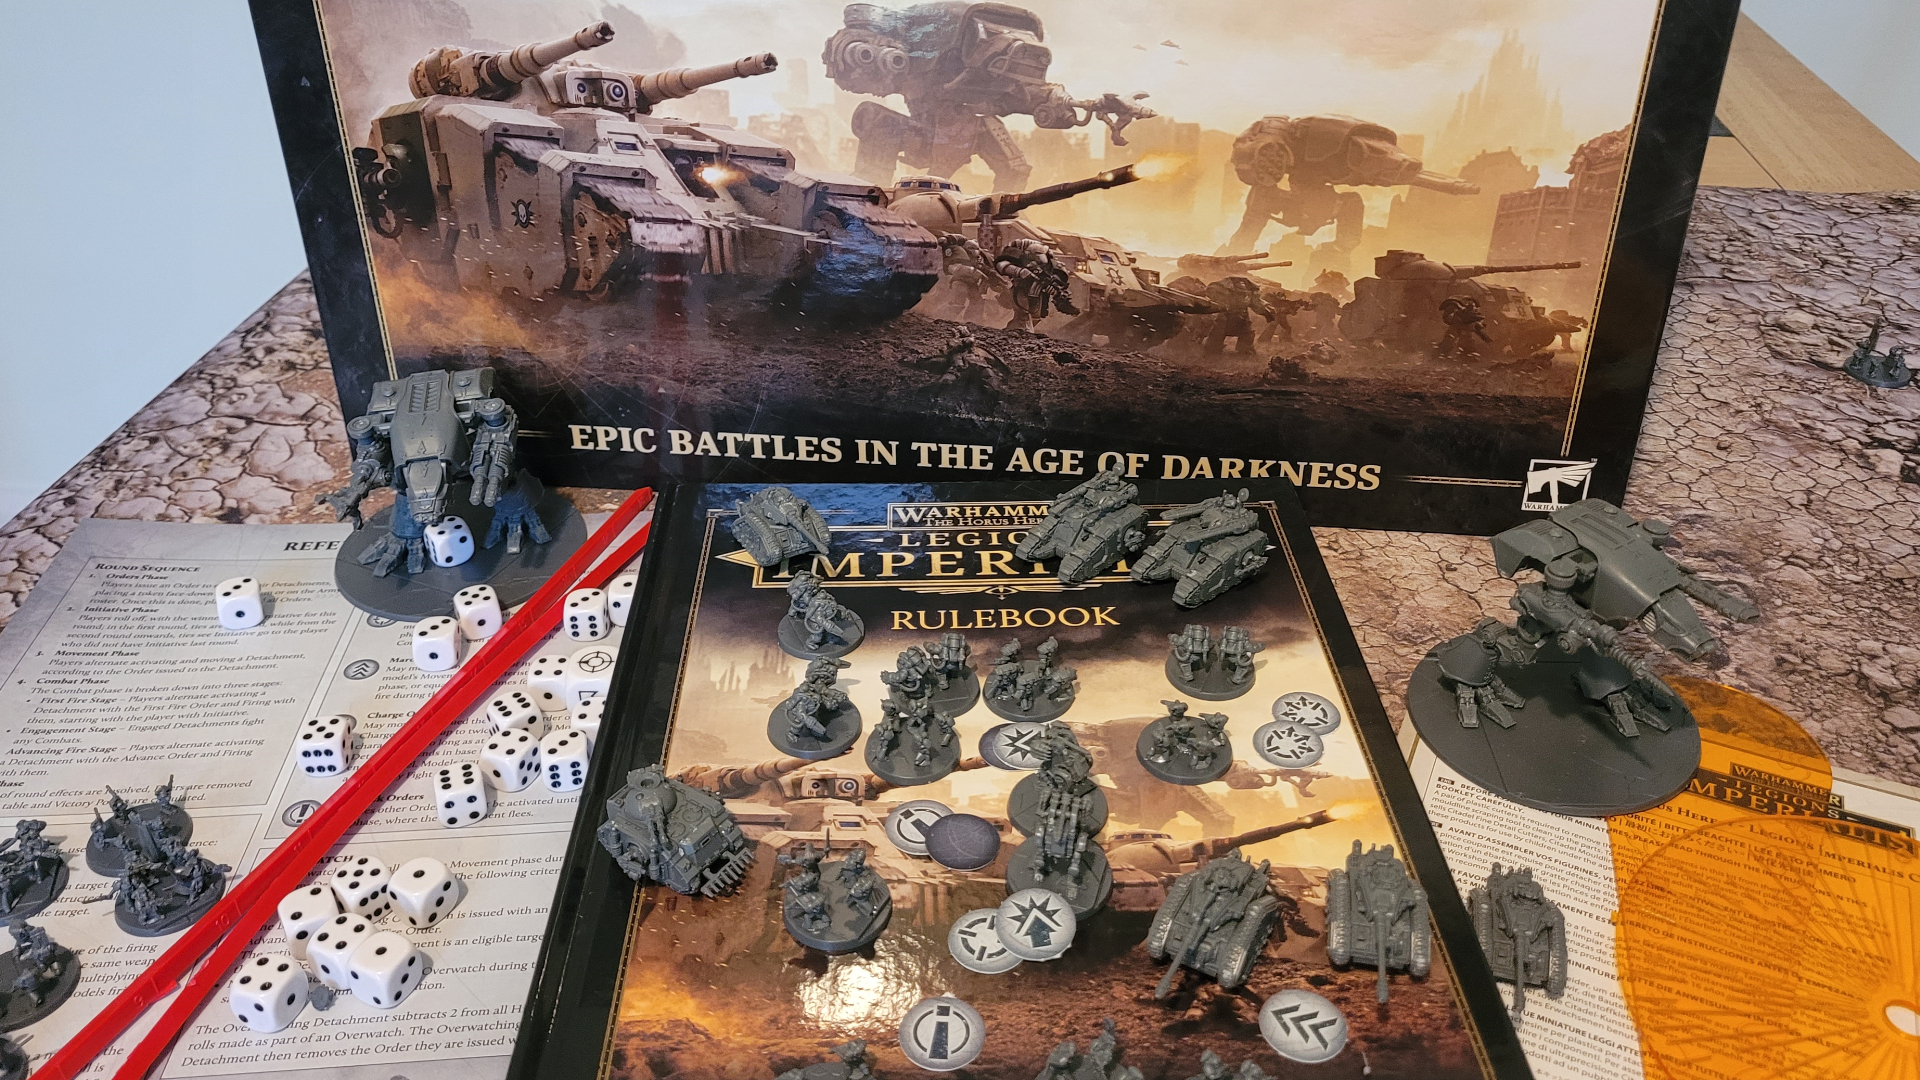 La boîte Legions Imperialis, le livret de règles, les miniatures, les jetons et les outils sur une table